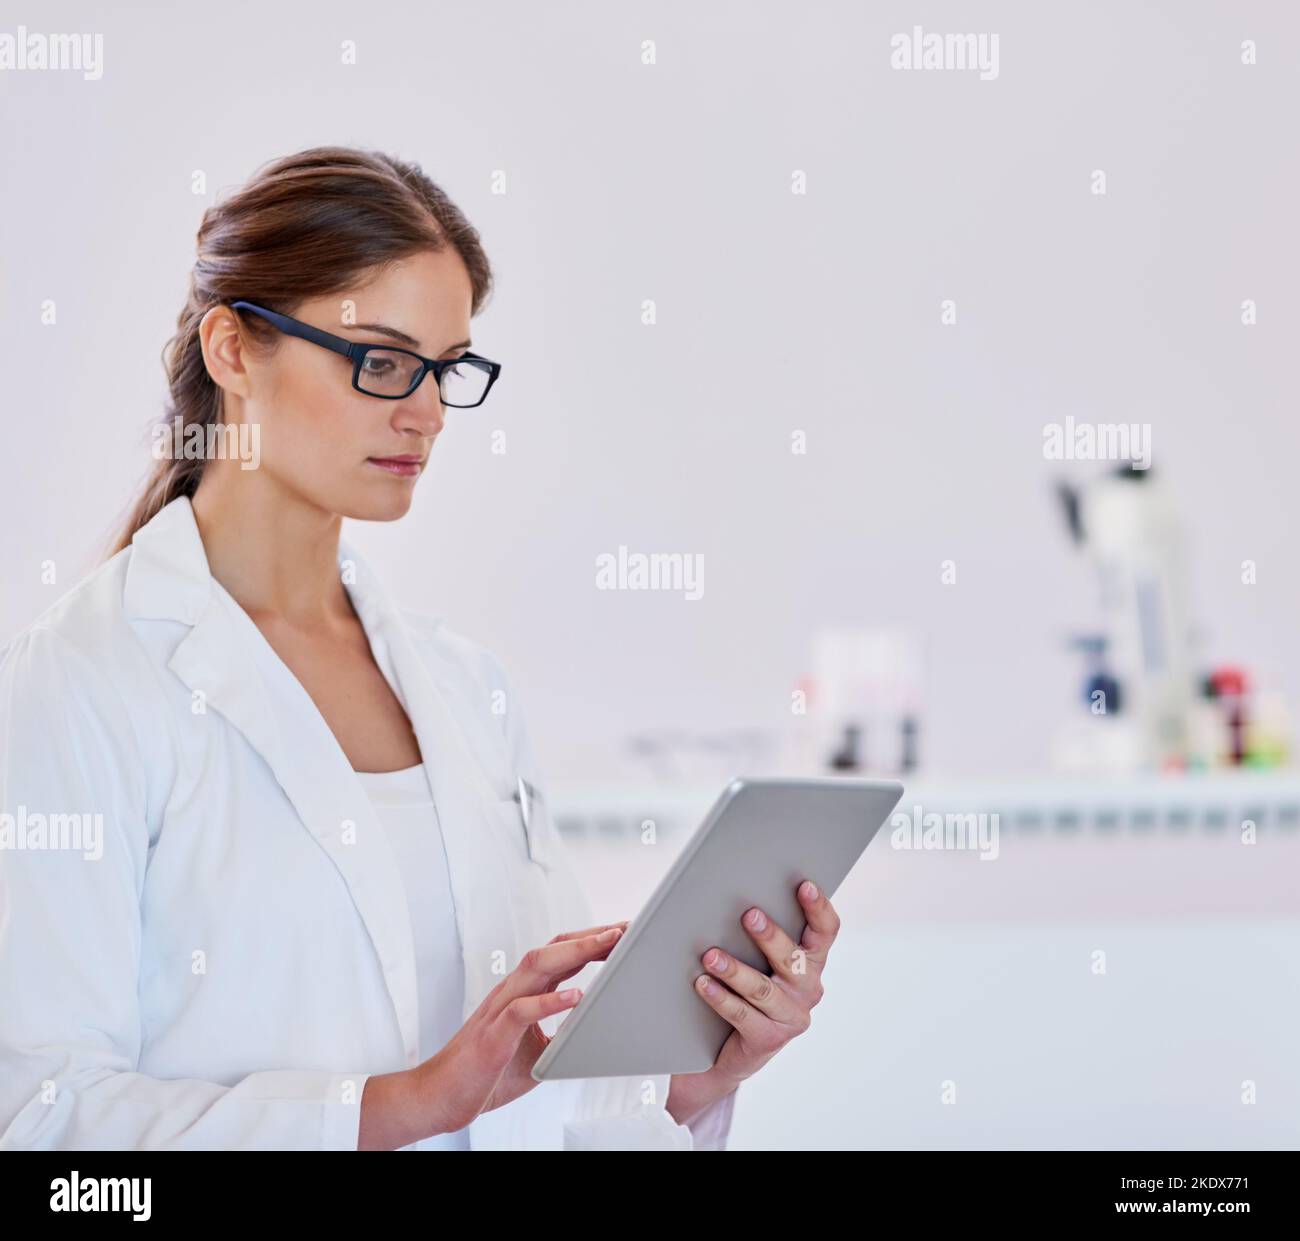 Registrazione dei risultati per ricerche future. Uno scienziato che utilizza un tablet digitale mentre si trova in un laboratorio. Foto Stock